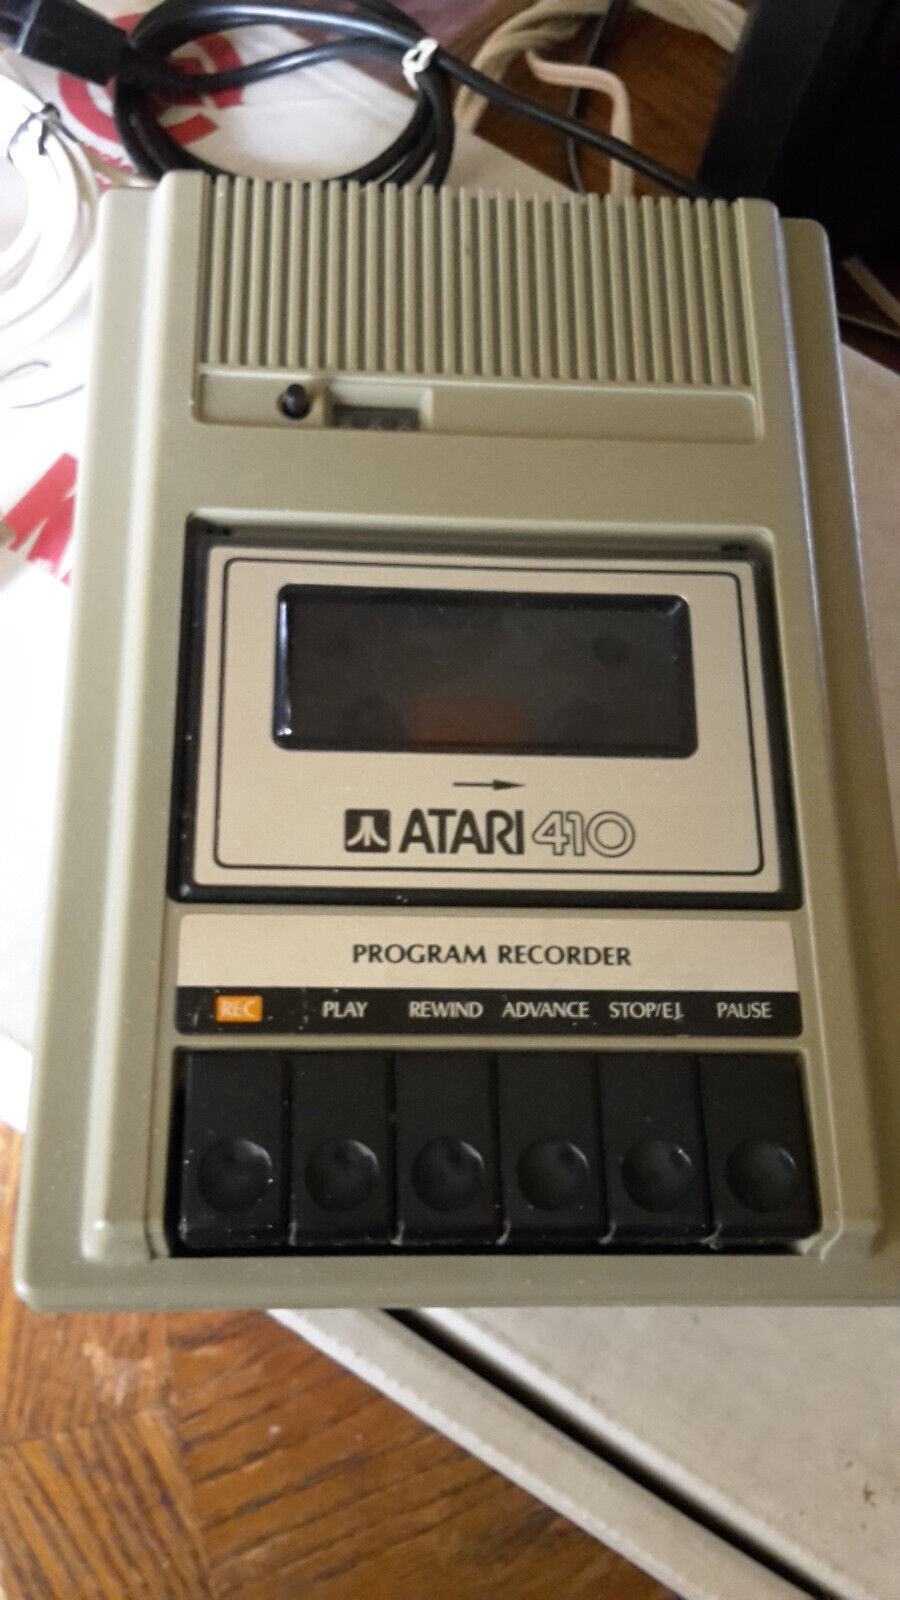 Atari 410 Program Recorder Cassette Drive, Untested